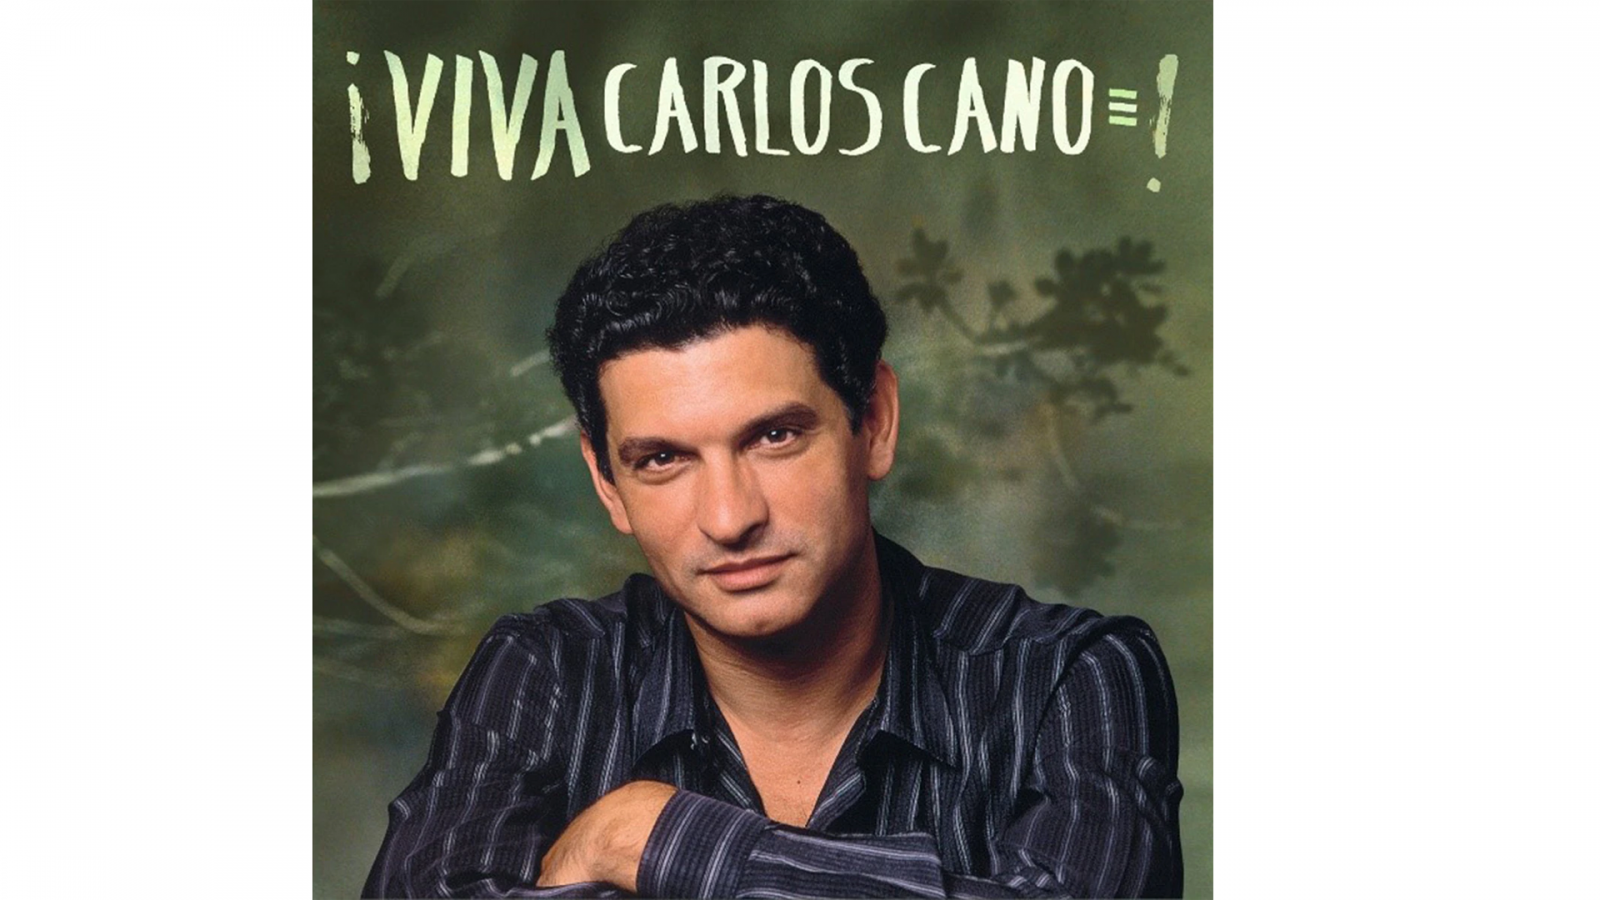  Las Mañanas de Radio Nacional con Pepa Fernández - '¡Viva Carlos Cano!' - Escuchar ahora